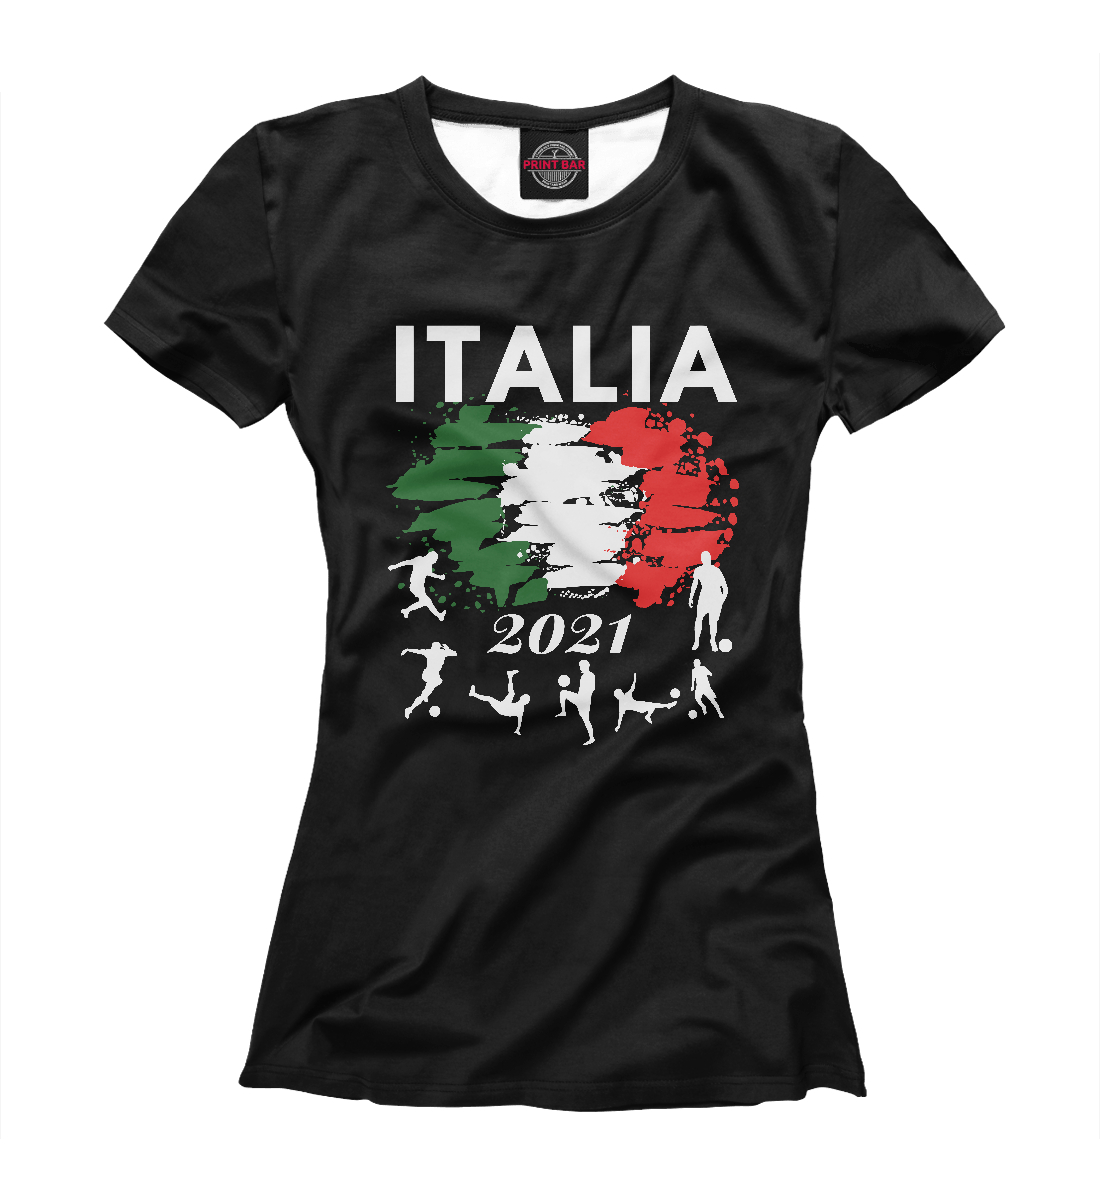 Детская Футболка Italia 2021 для девочек, артикул SIT-422505-fut-1mp